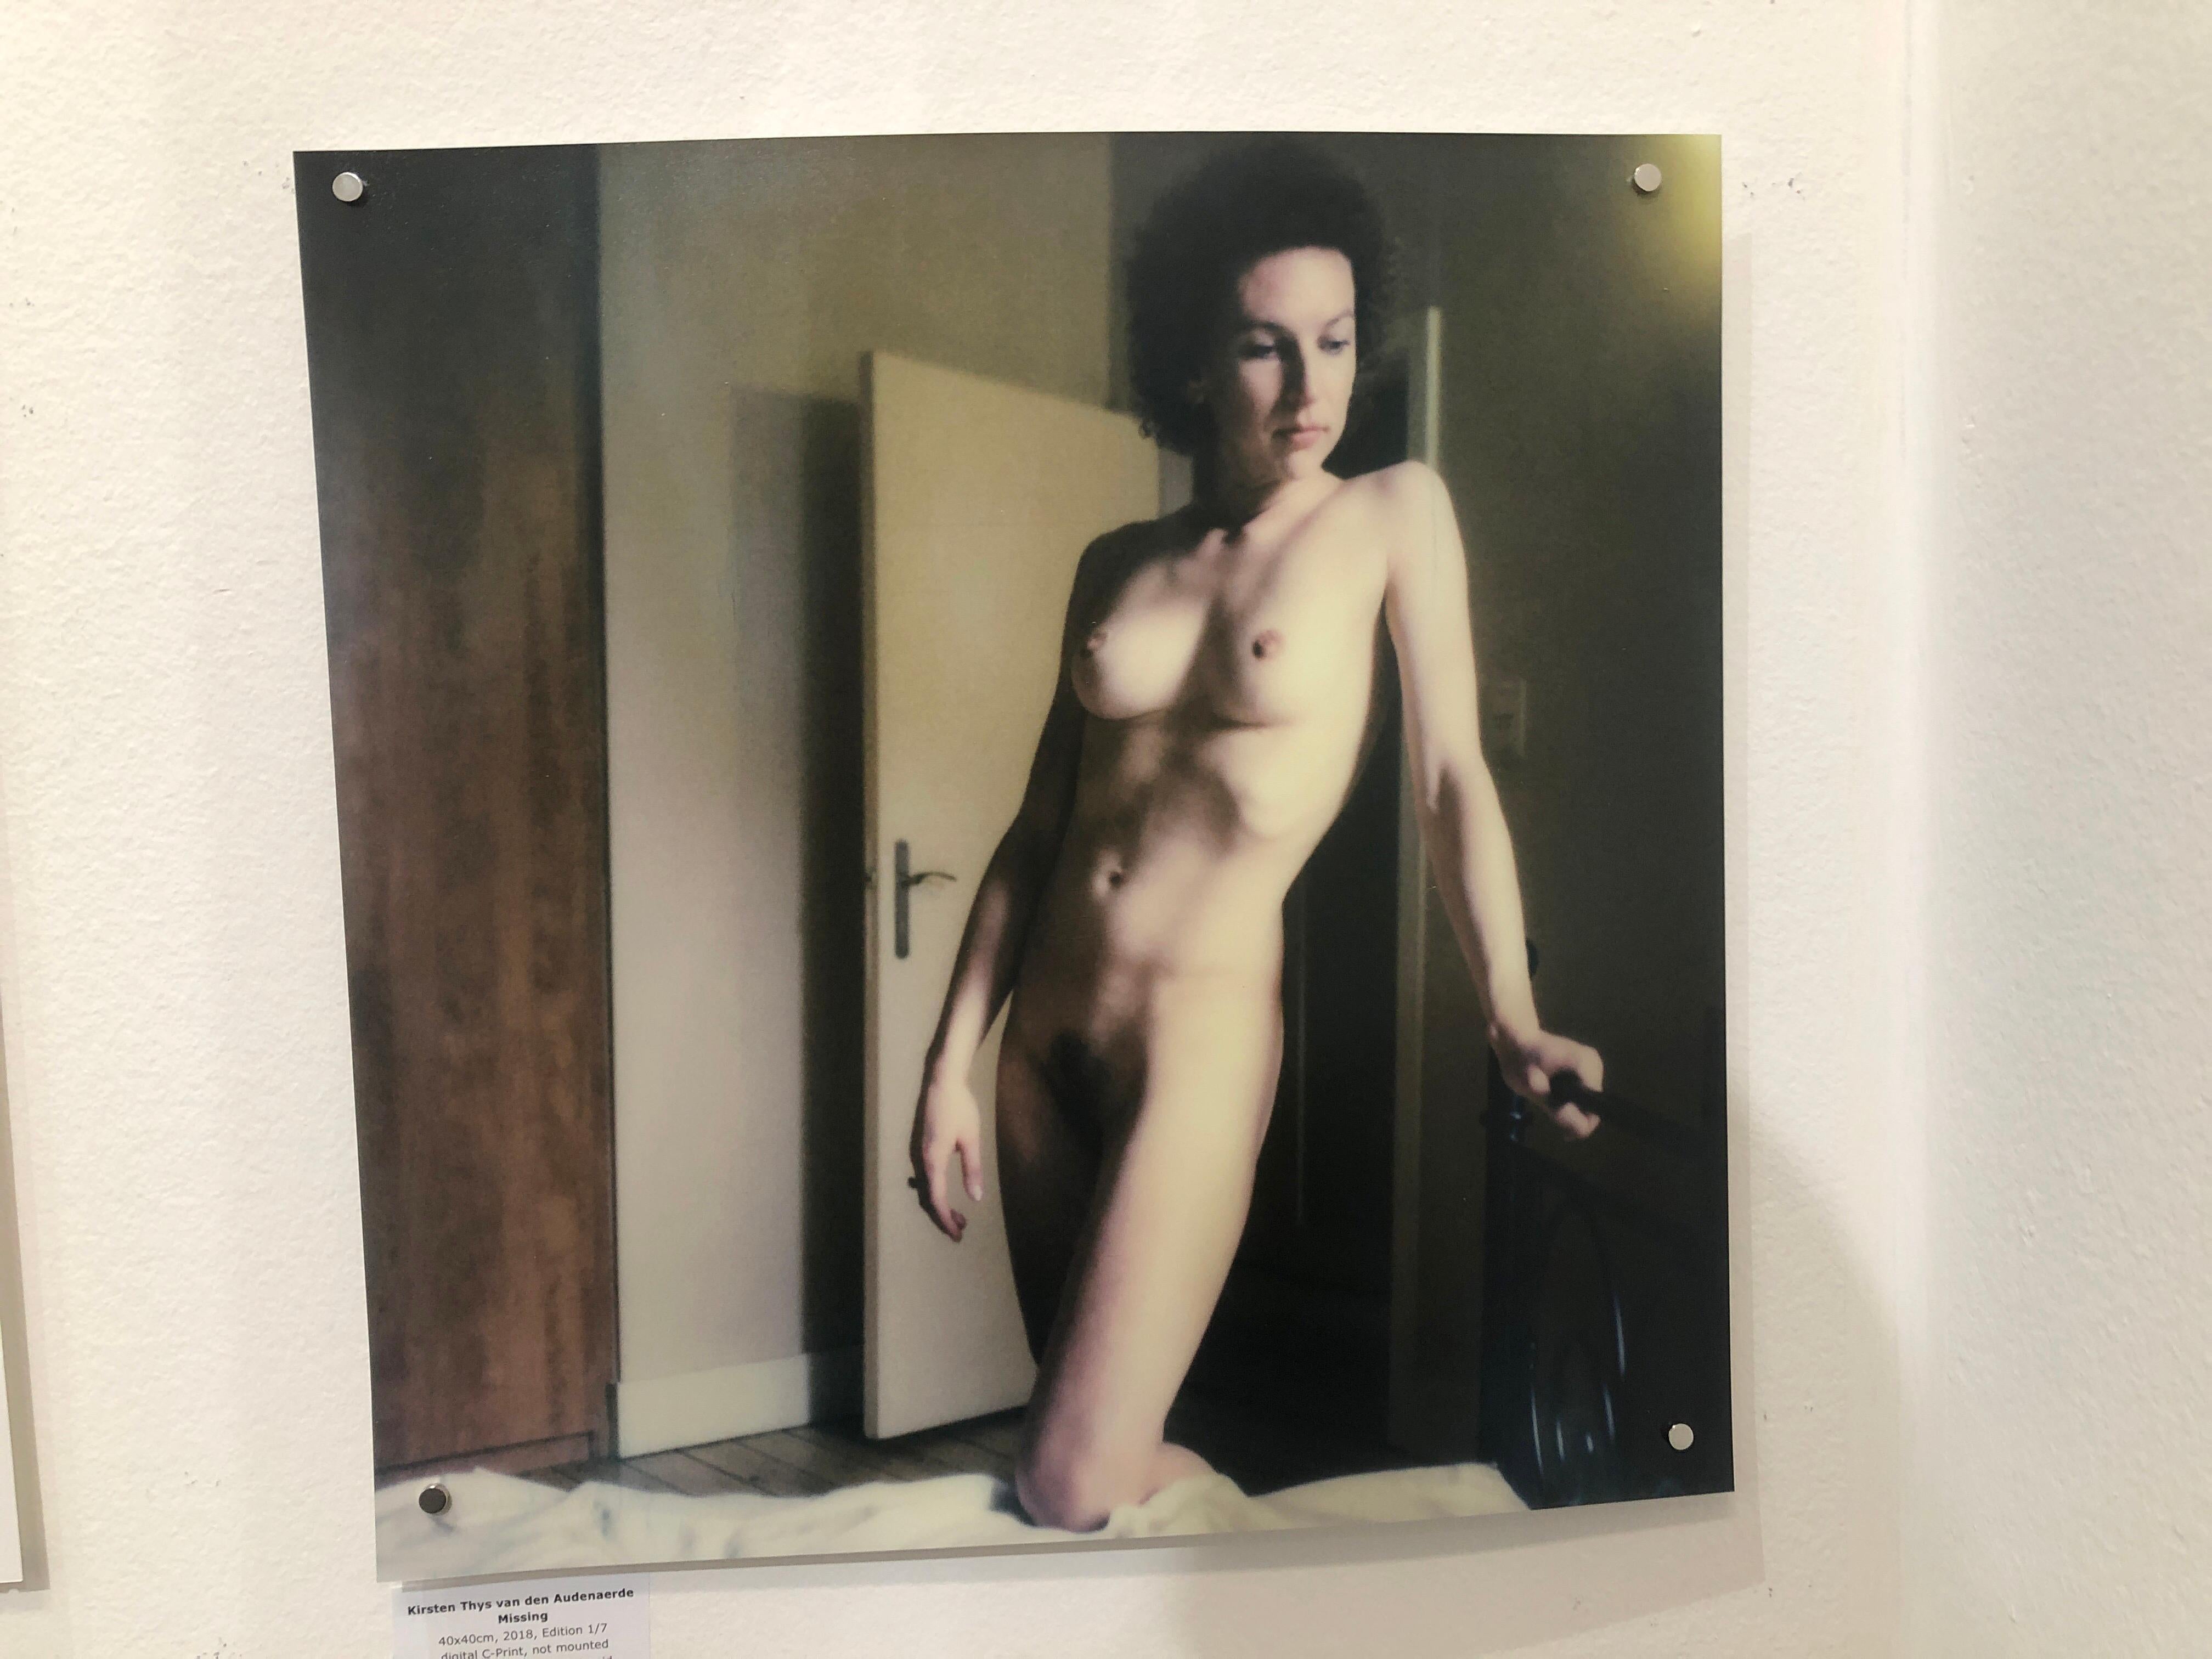 Missing - 40x40cm, 21. Jahrhundert, Polaroid, Nackt, Frauen (Zeitgenössisch), Photograph, von Kirsten Thys van den Audenaerde